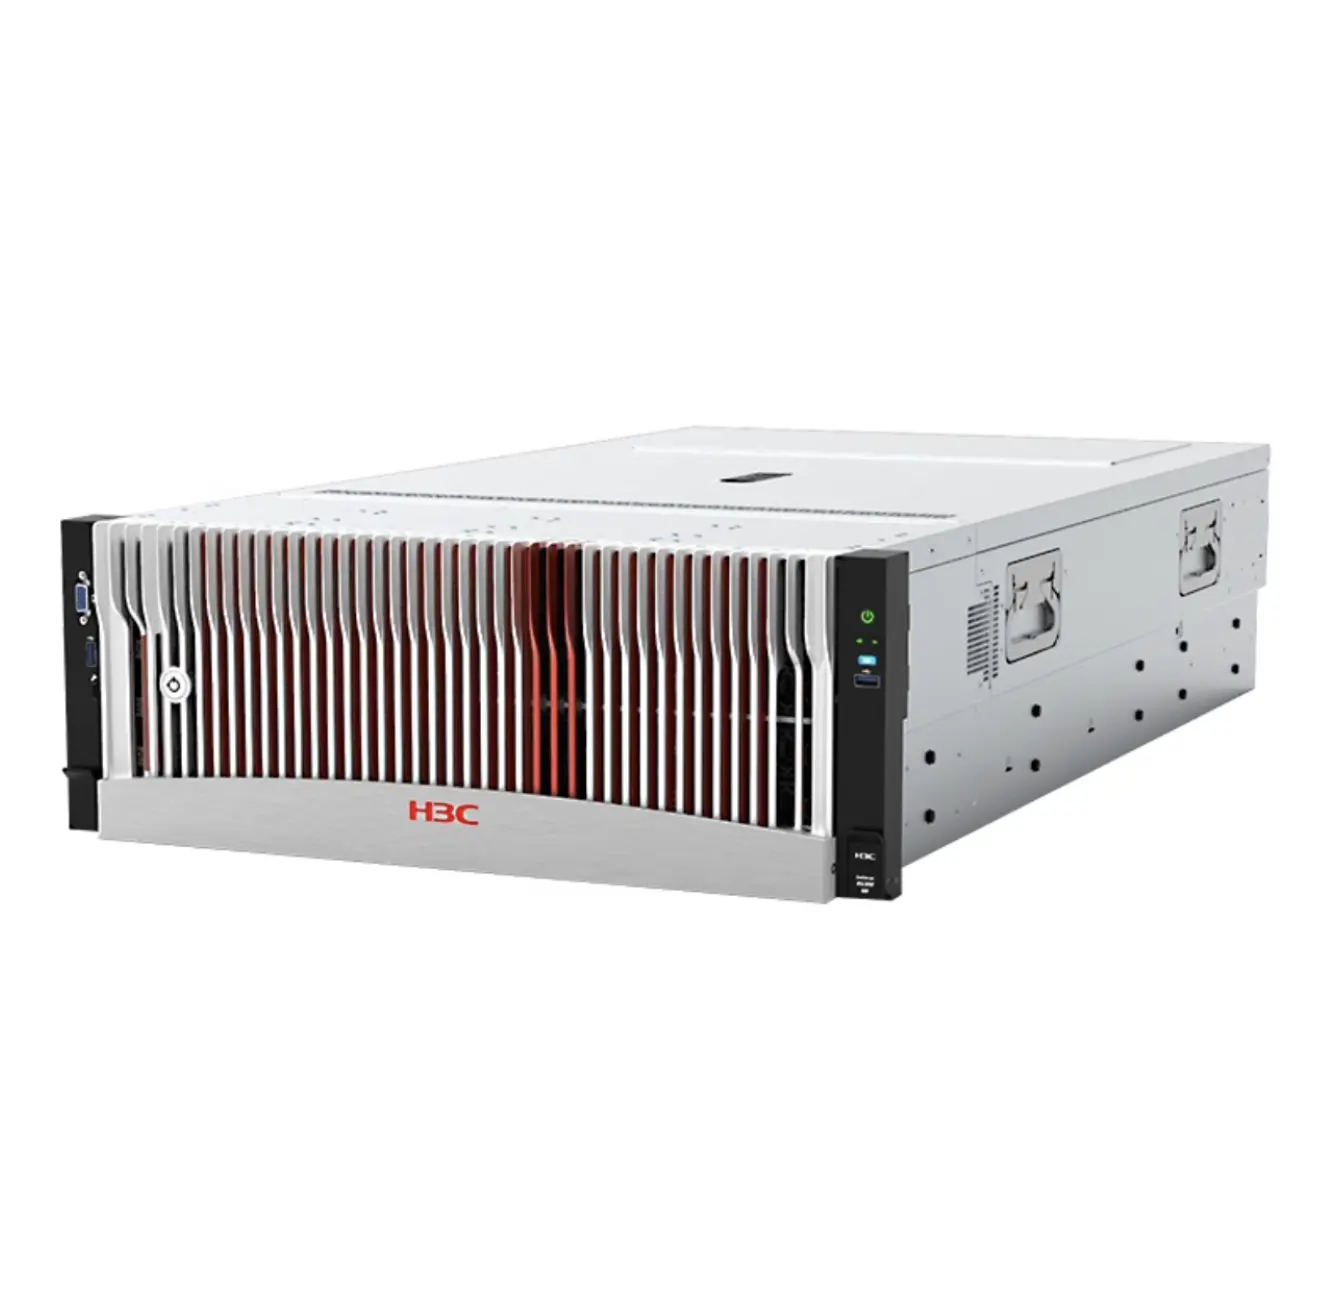 최신 H3C UniServer R5300 G5 4U 랙 서버 GPU 서버 R5300G5 WINDOW 2009 서버